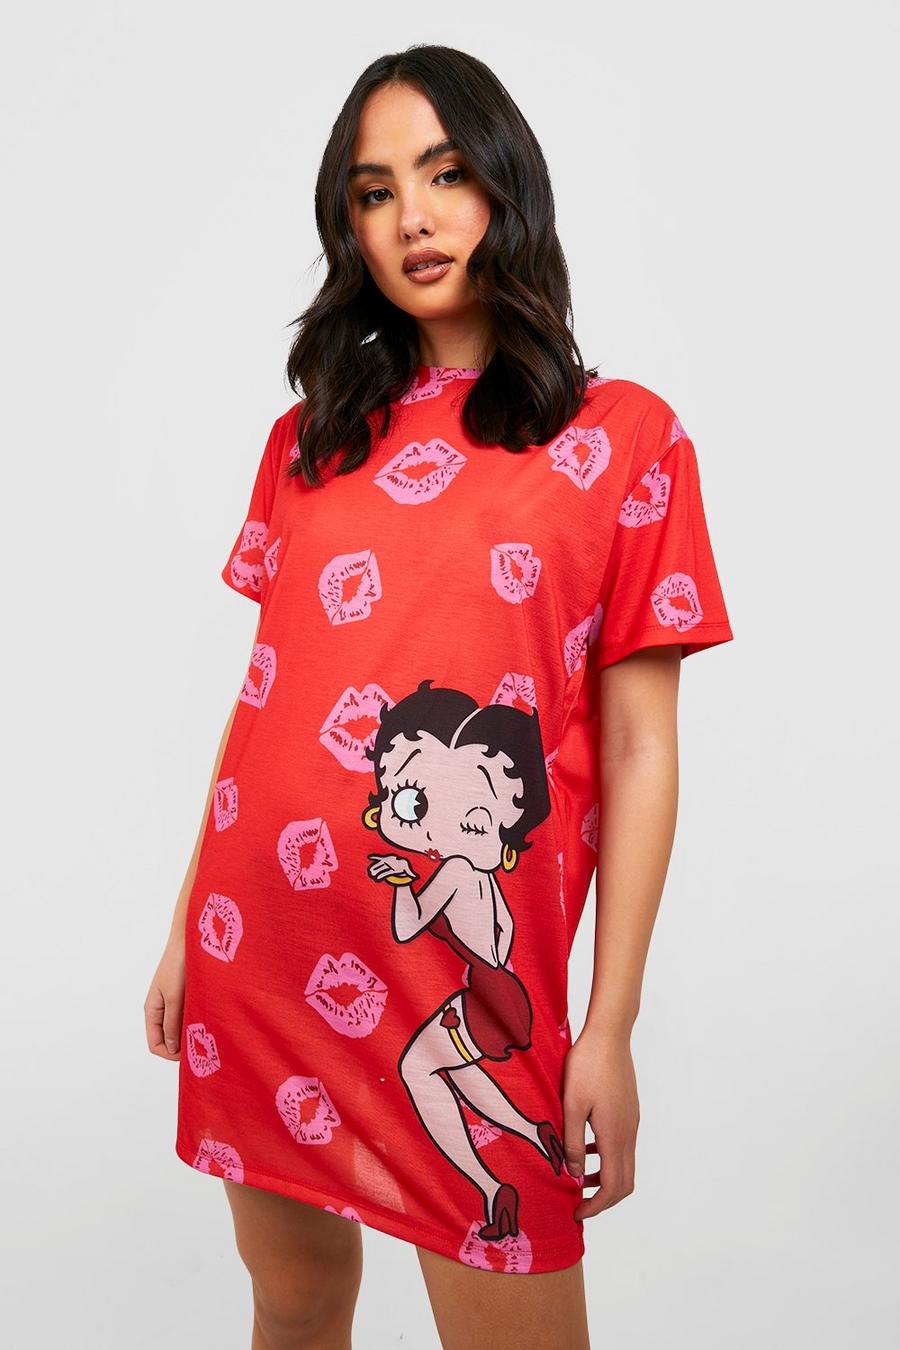 Red Betty Boop Pyjama T-Shirt